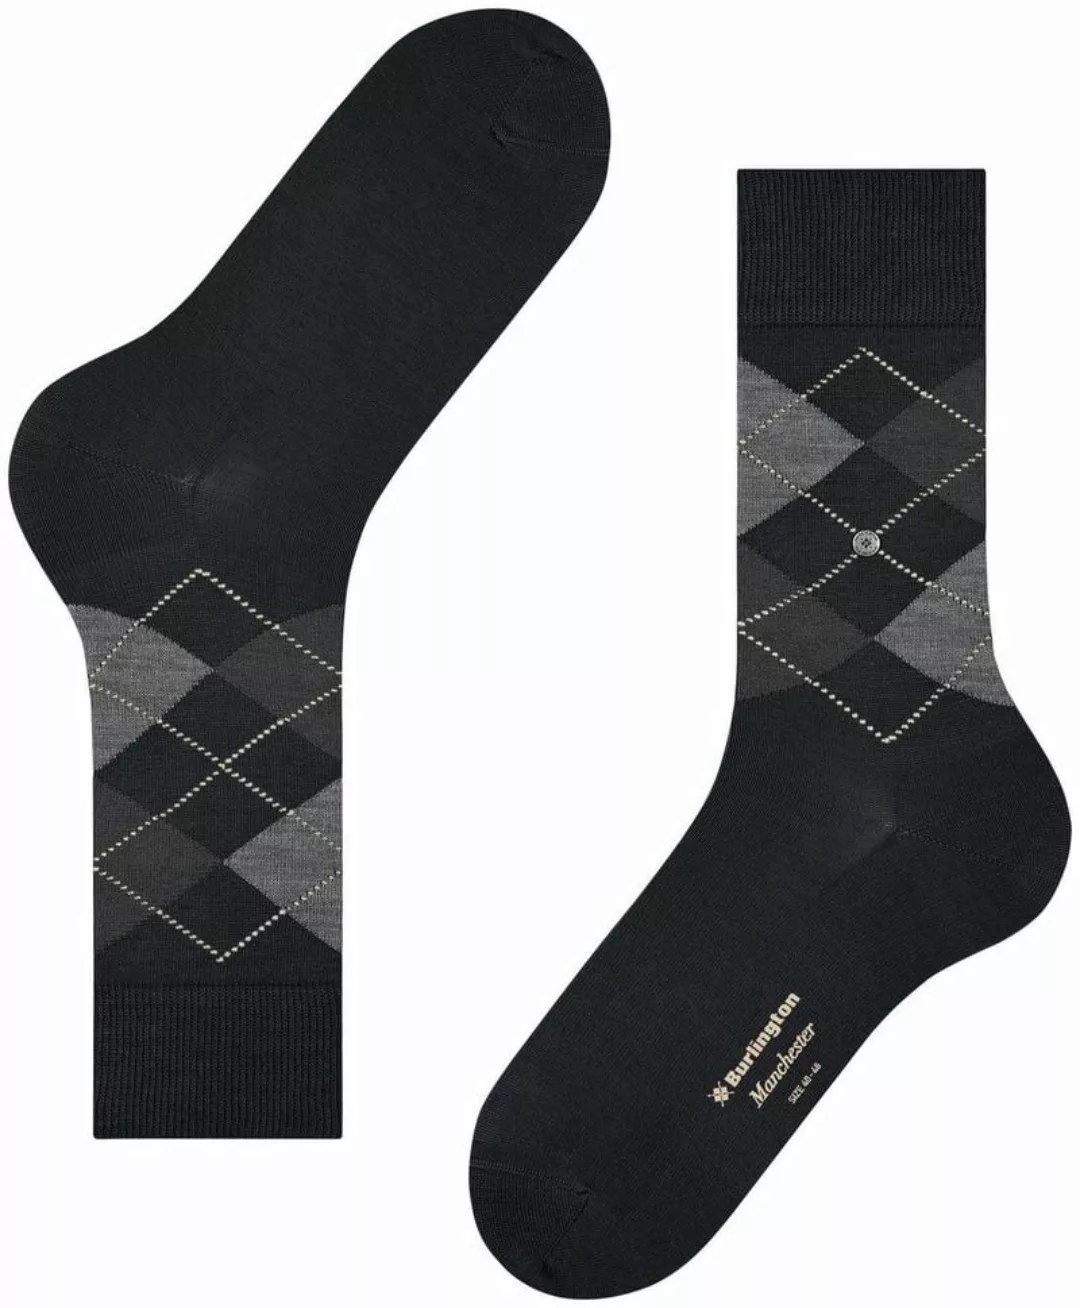 Burlington Manchester Socken Kariert Schwarz 3000 - Größe 40-46 günstig online kaufen